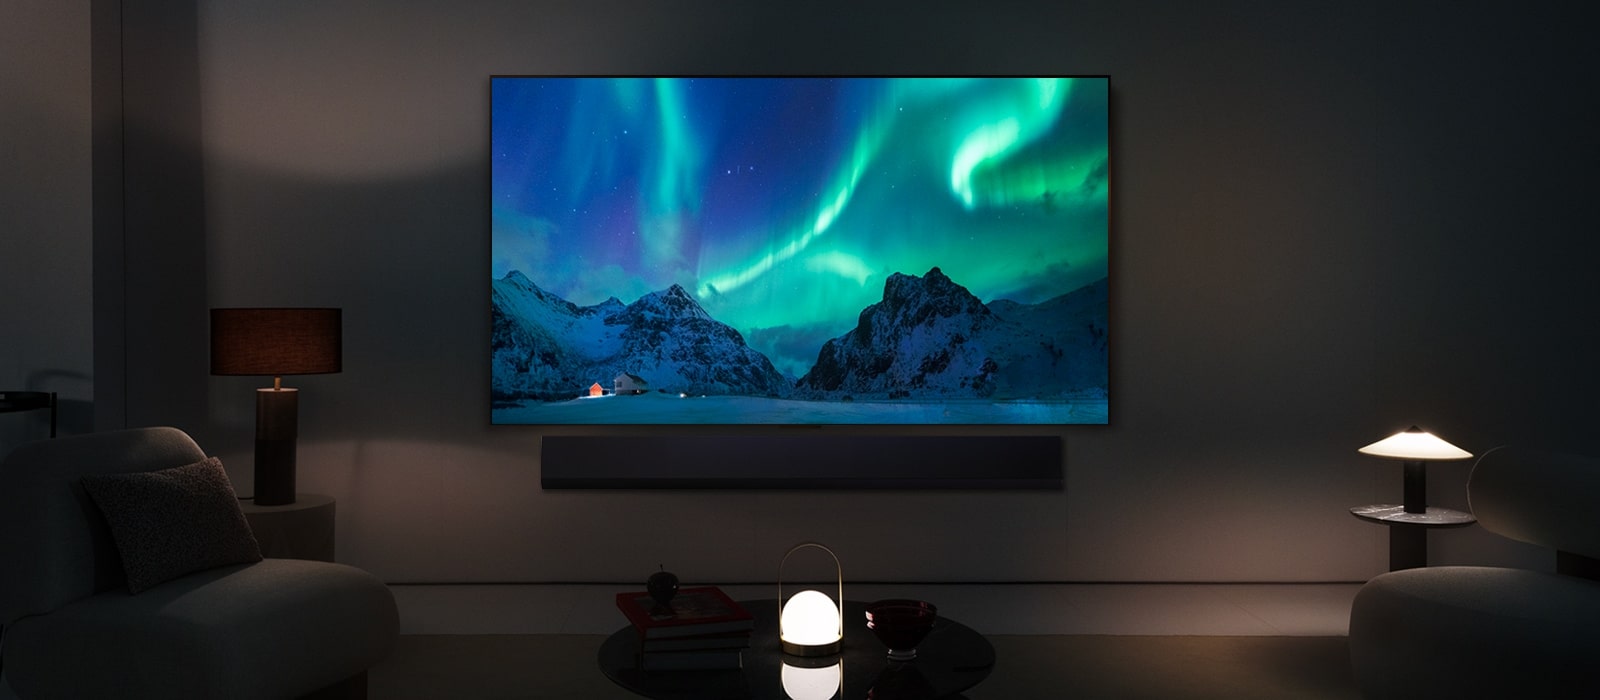 LG OLED TV i LG Soundbar u modernom životnom prostoru po noći. Na ekranu je prikazana slika polarne svetlosti na idealnom nivou osvetljenosti.